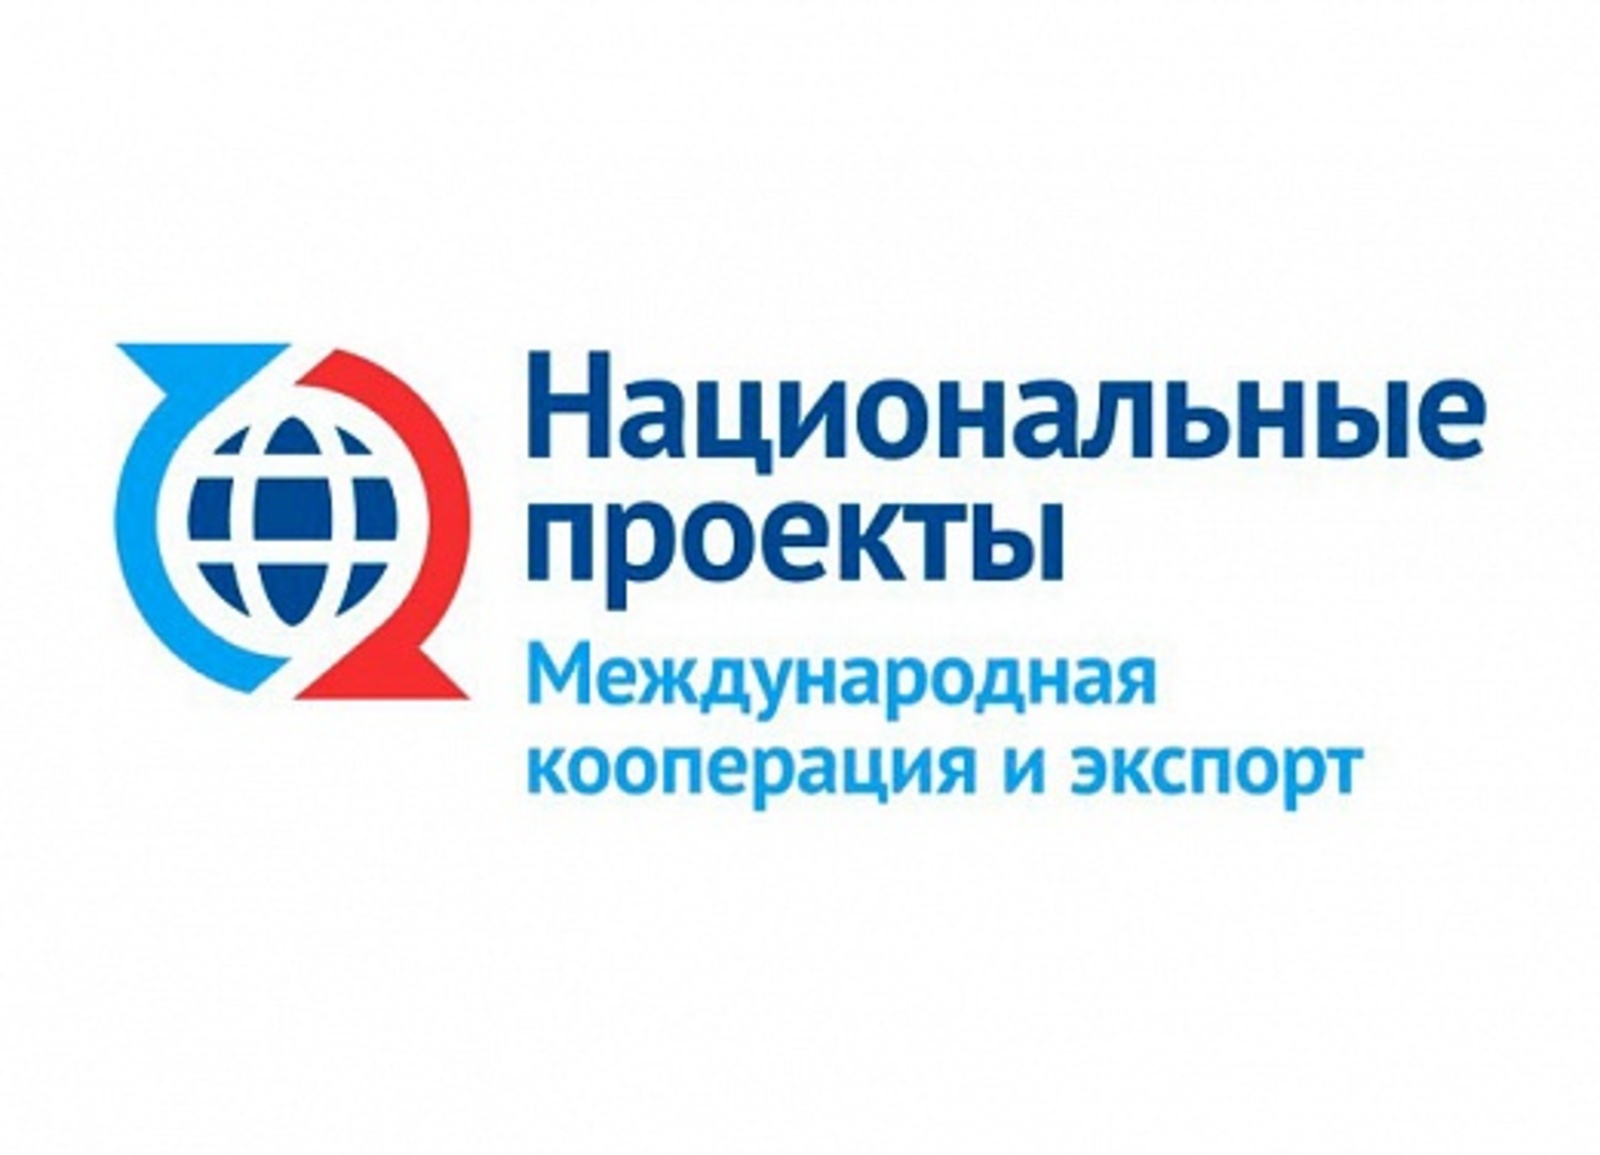 Предприятия Башкортостана вошли в число лучших экспортеров Приволжского федерального округа